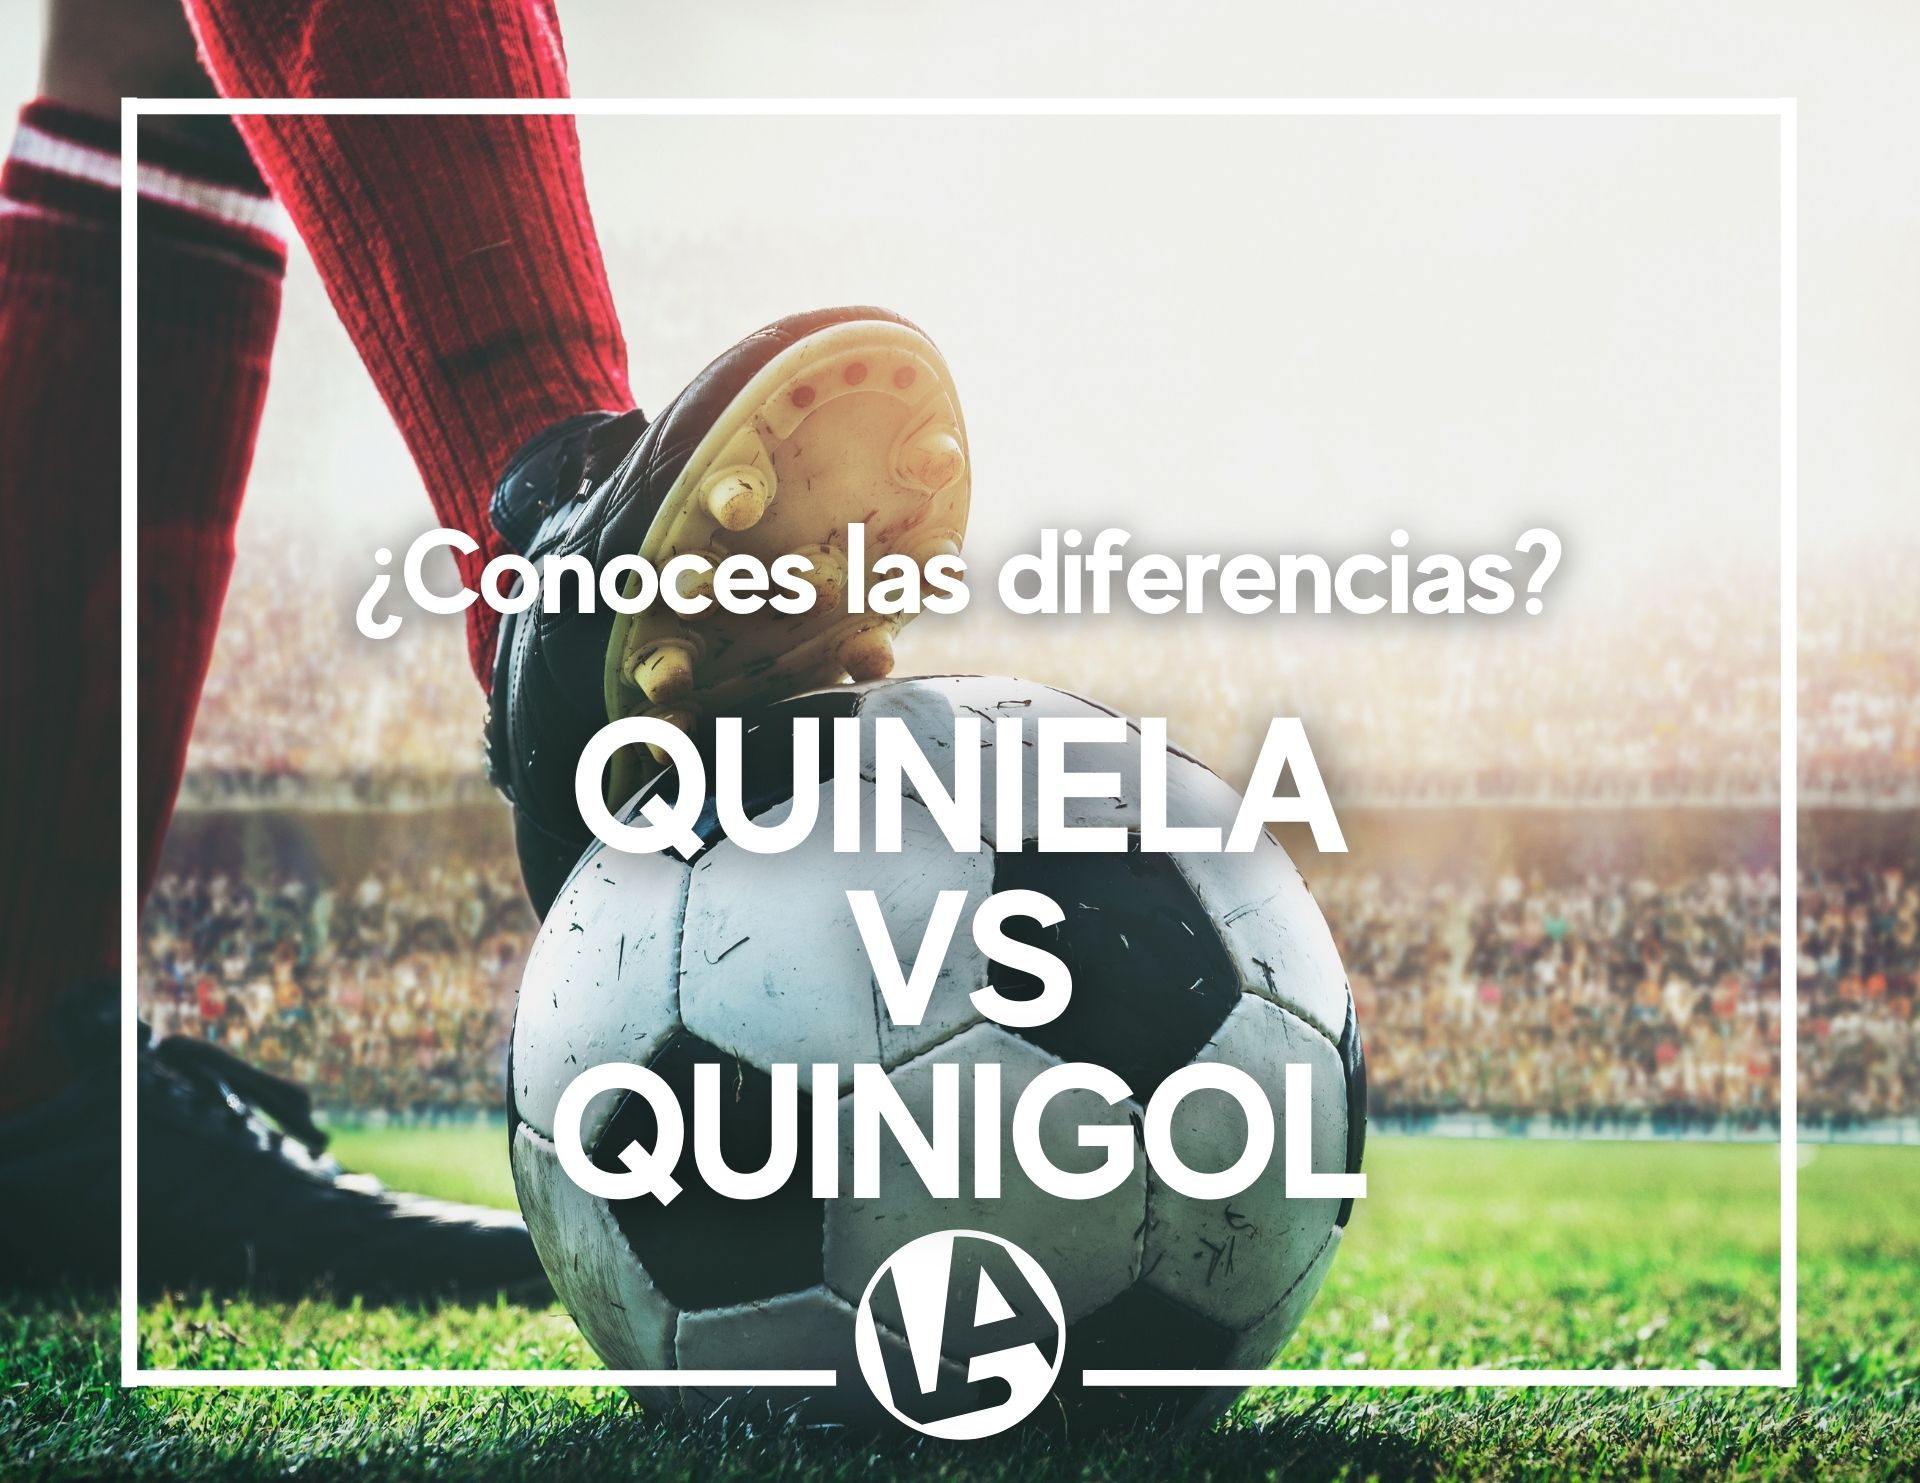 ⚽ ¿Conoces las diferencias entre La Quiniela y el Quinigol? Te las explicamos aquí - Loteria Anta